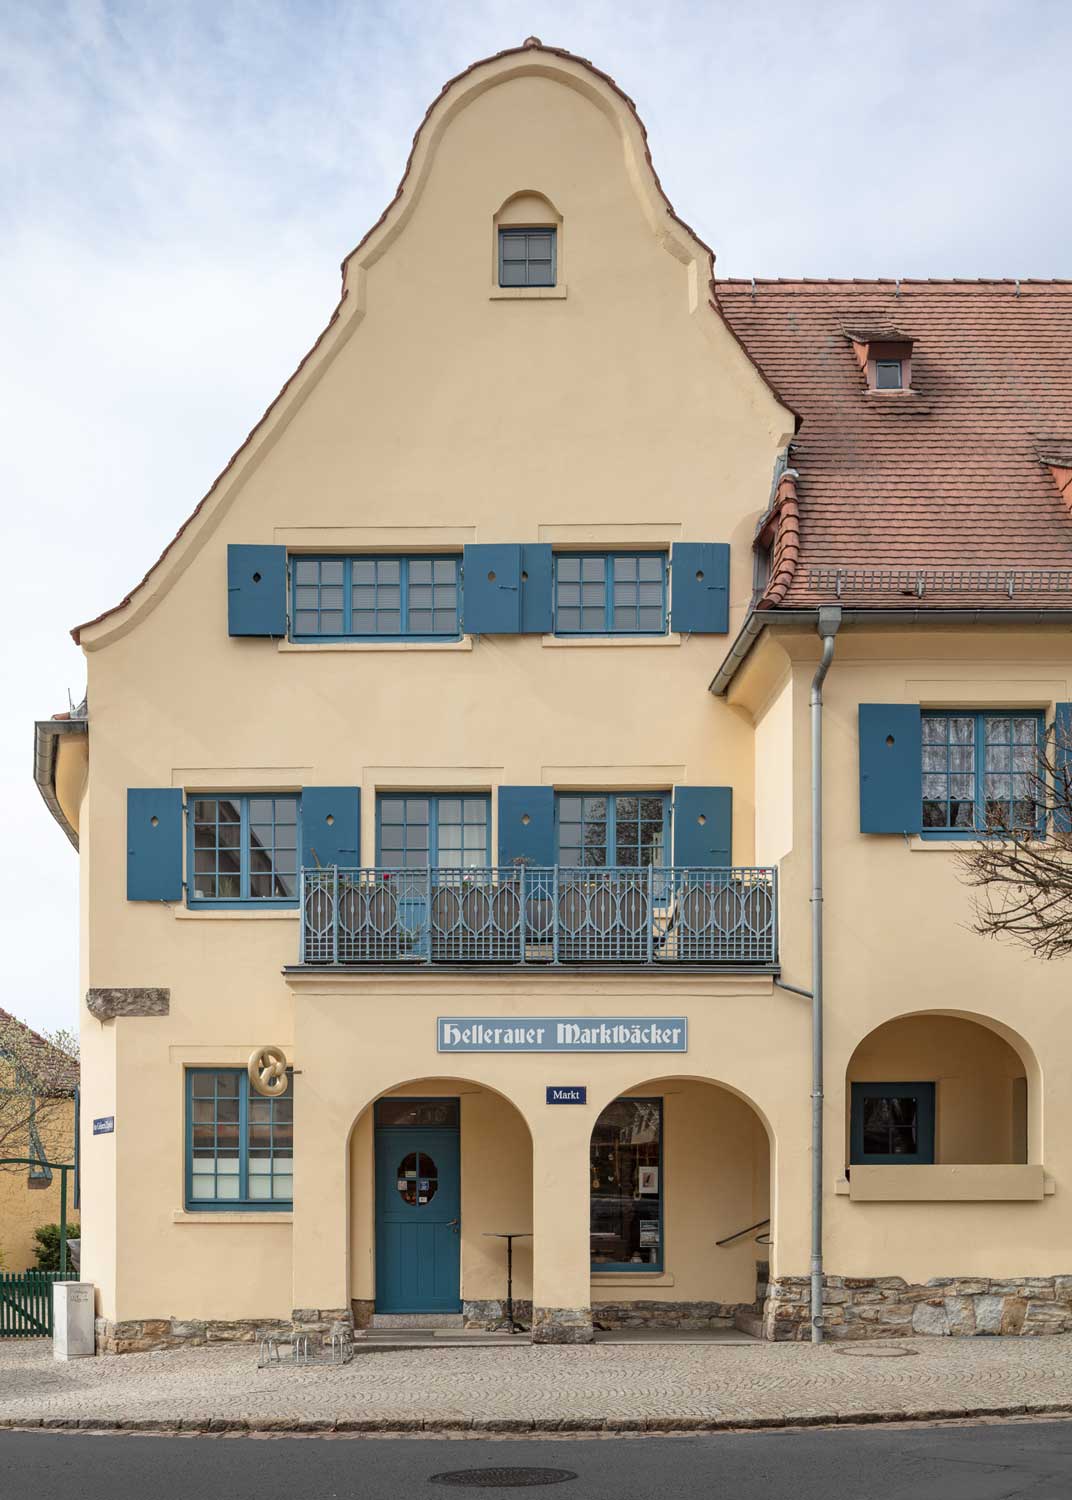 Foto, farbig: Haus mit sandfarbener Fassade und Ziegeldach.